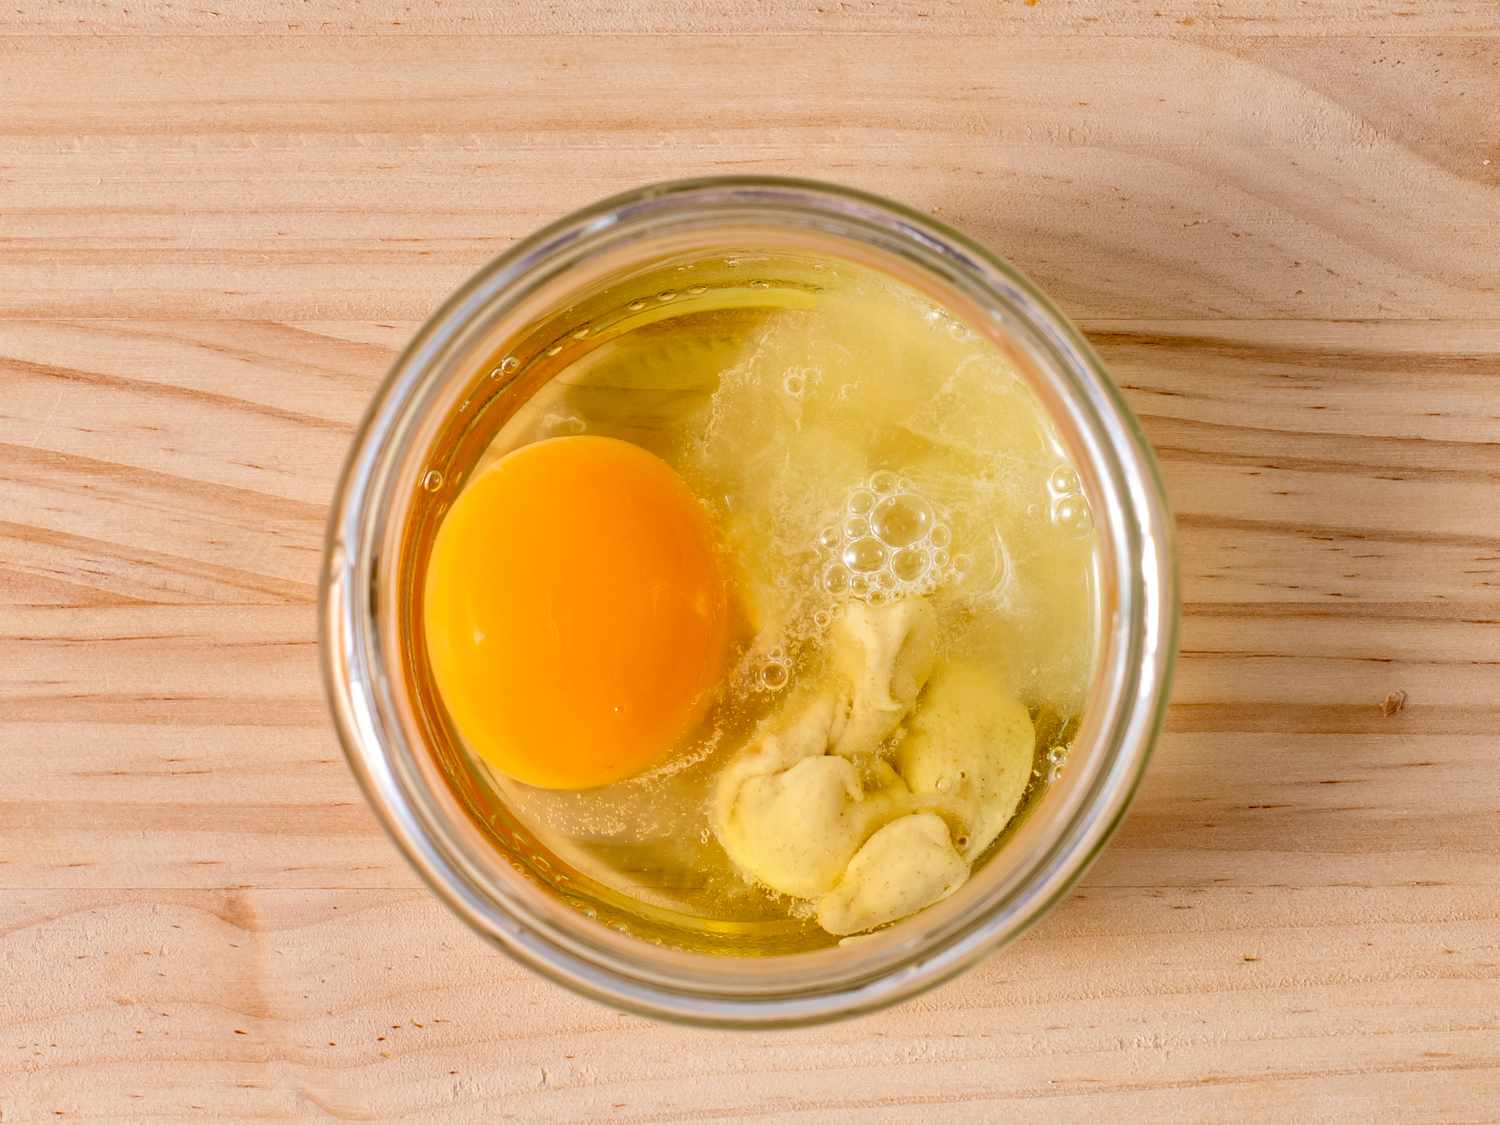 鸡蛋、柠檬汁和芥末放在一个玻璃罐子的底部，罐子的大小刚好能装下浸入式搅拌器的头。